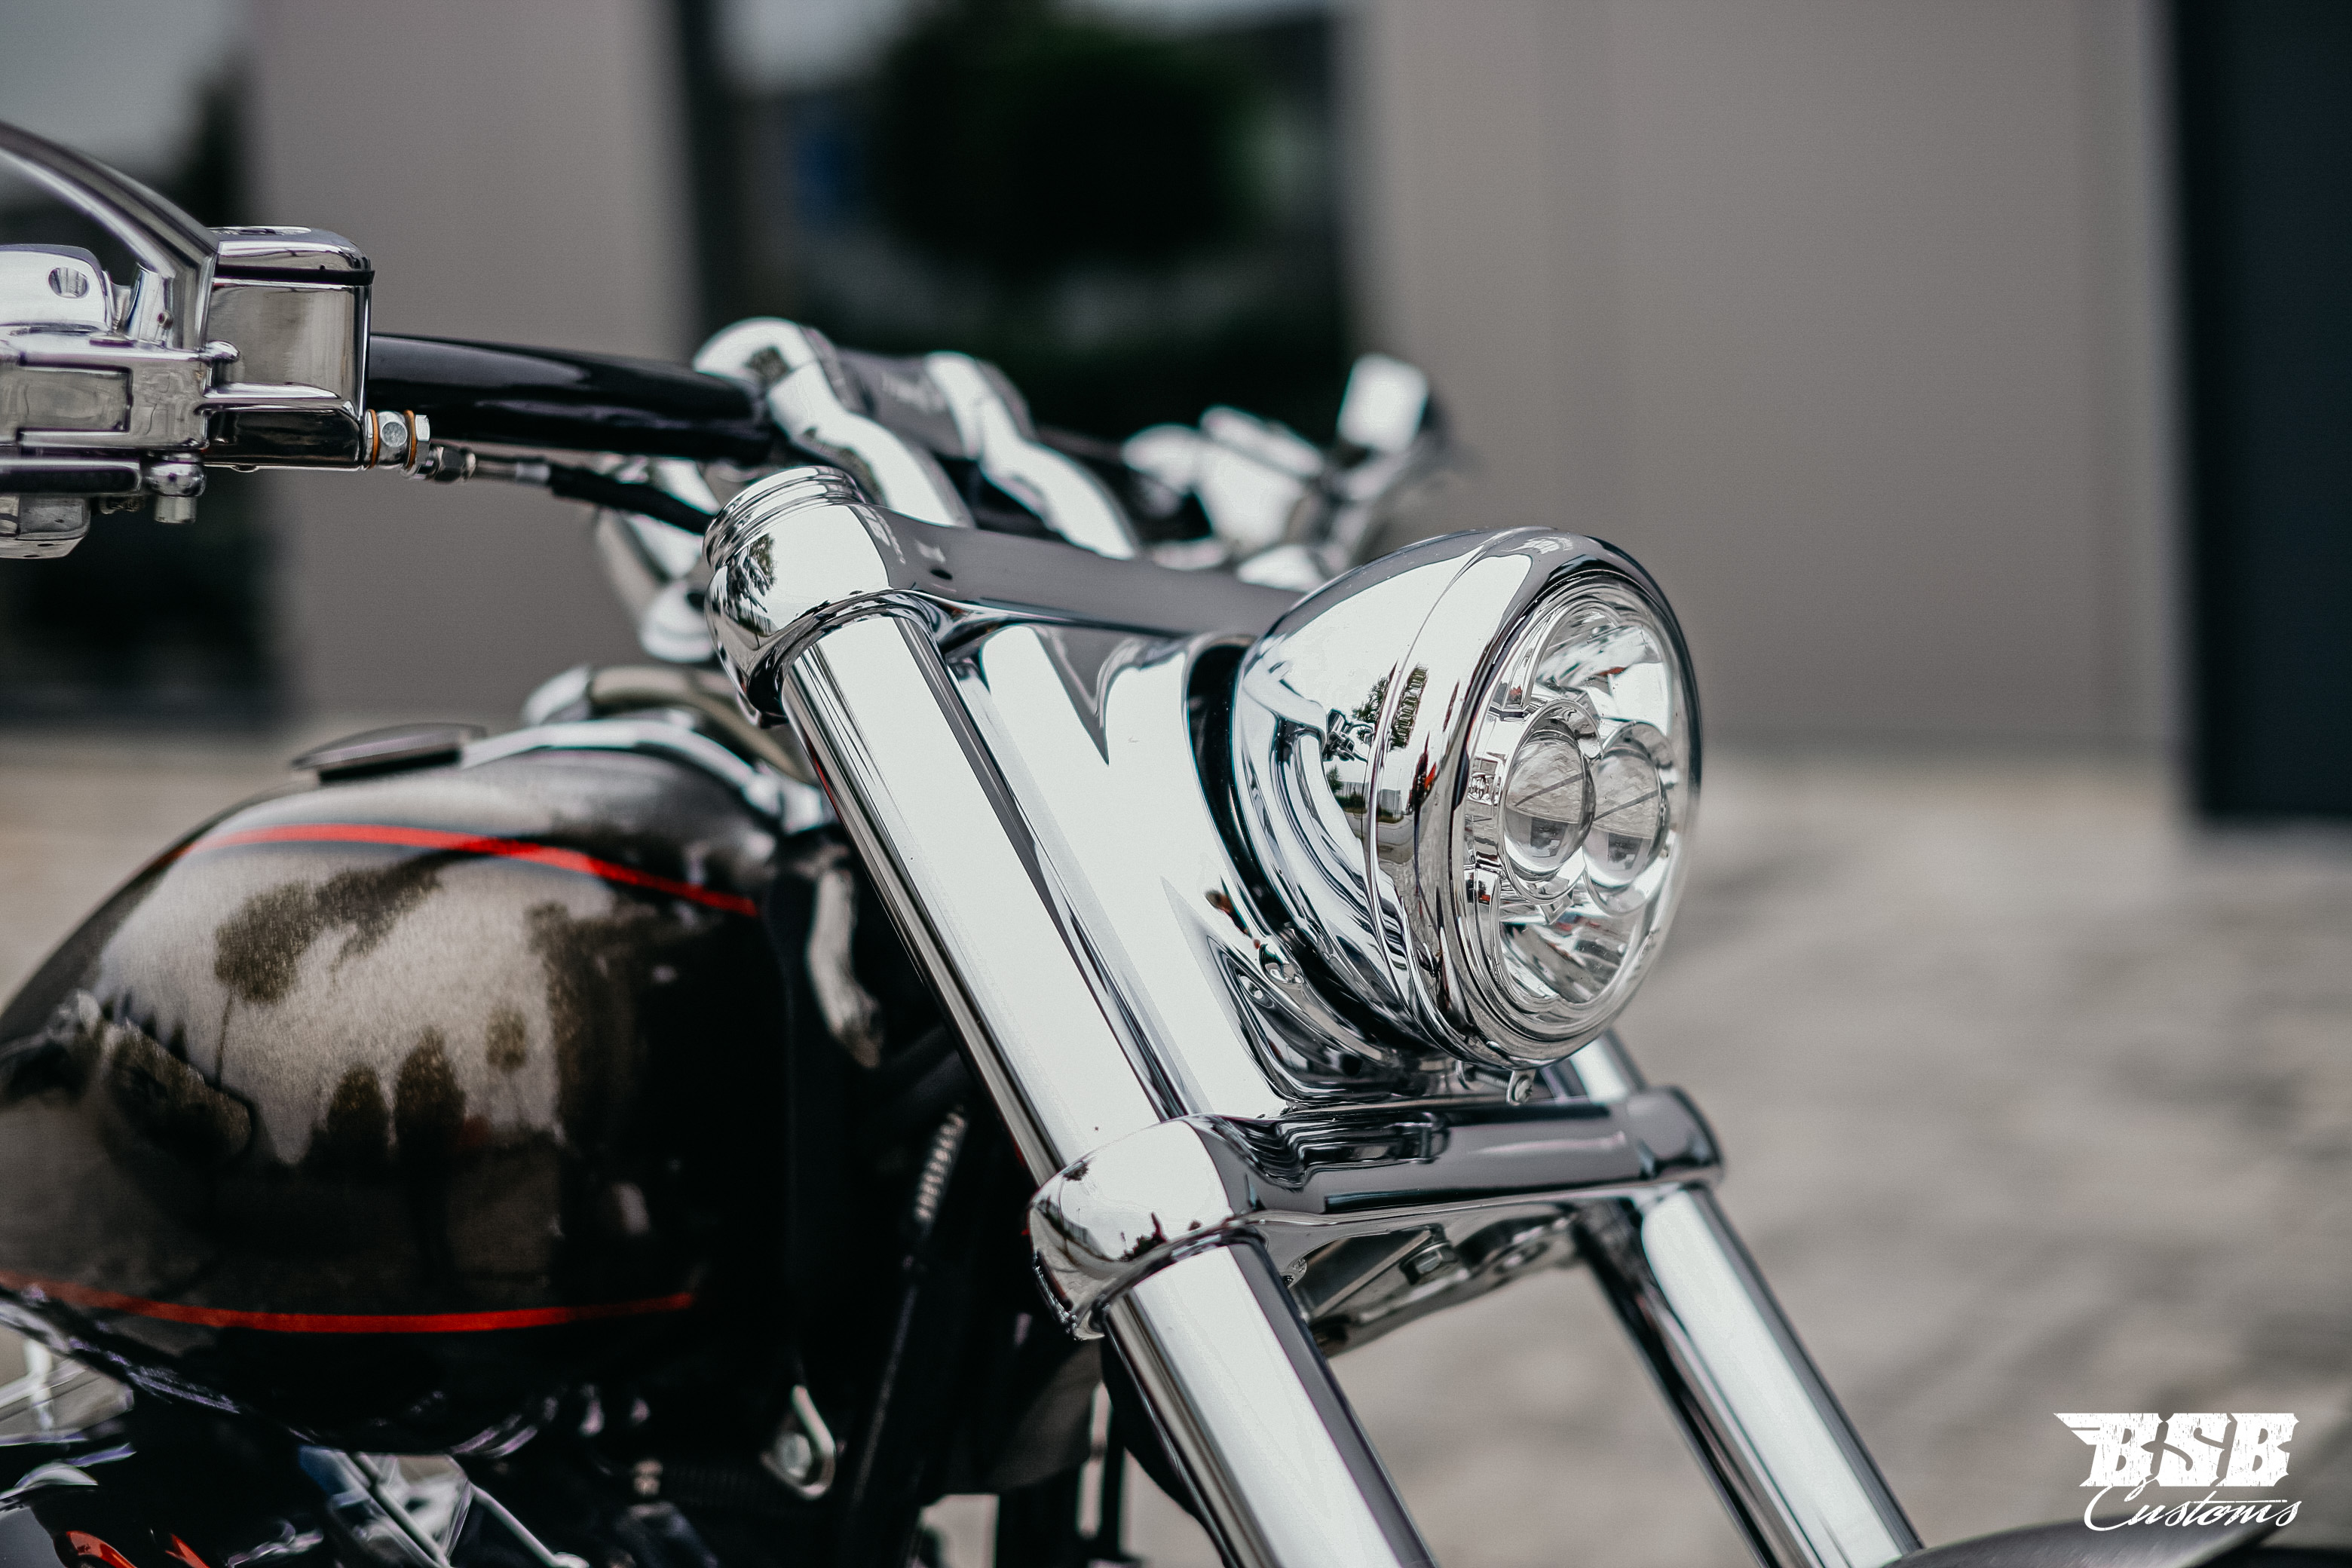 2014  Harley Davidson BREAKOUT CVO mit edlen Teilen / Leistungsteigerung / Luftfahrwerk ab 400,- finanzieren